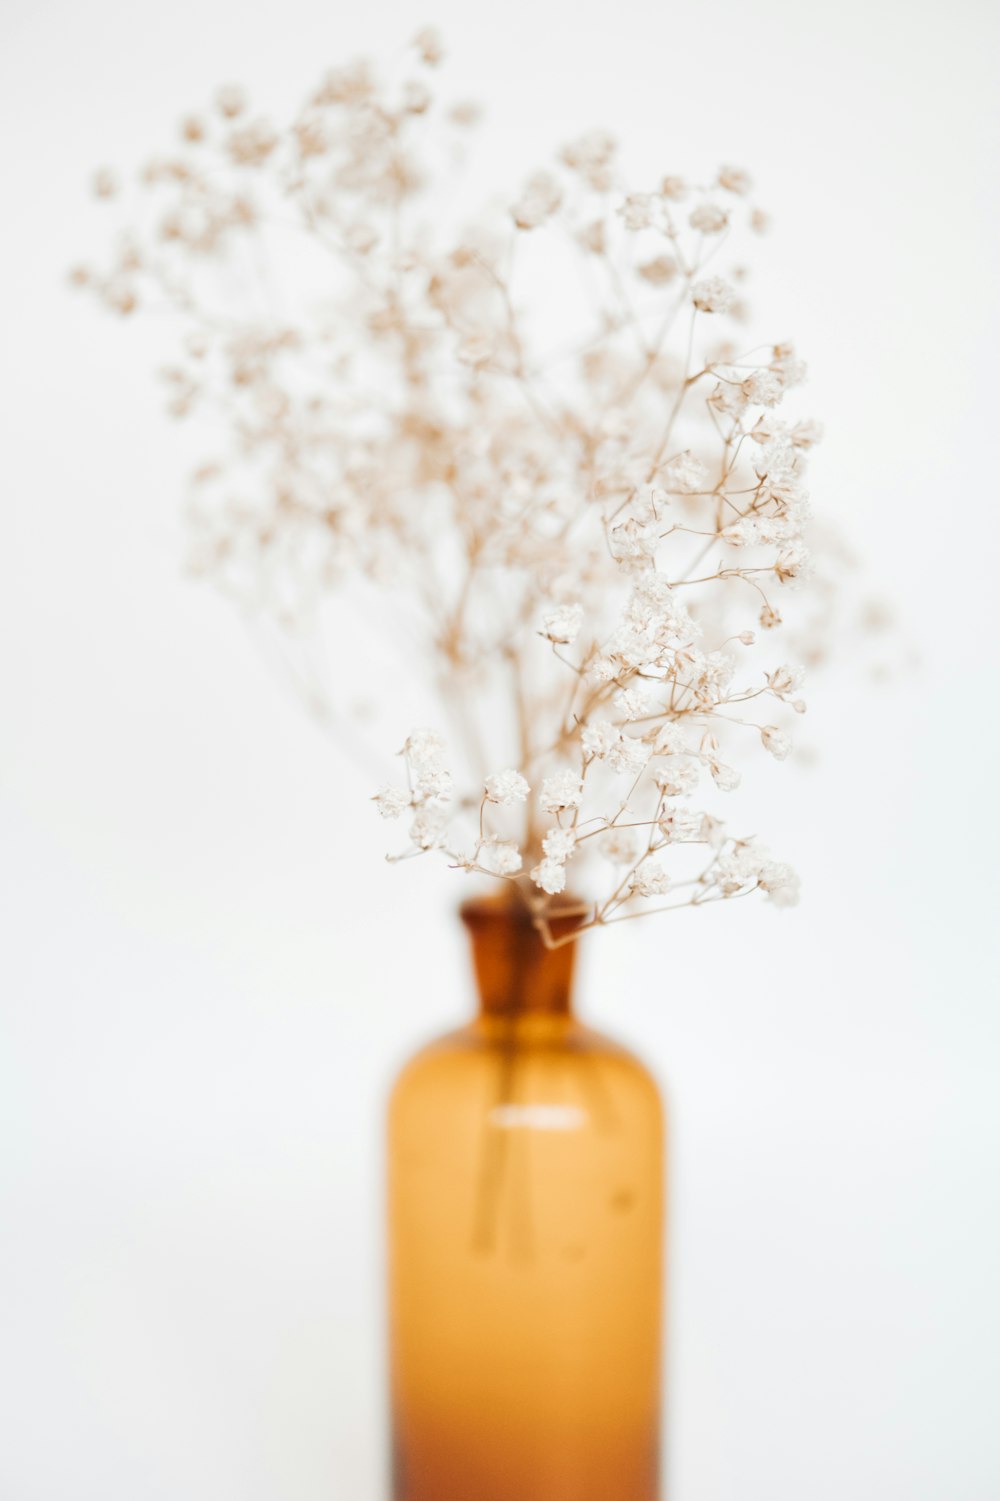 オレンジ色のガラス瓶に白い花